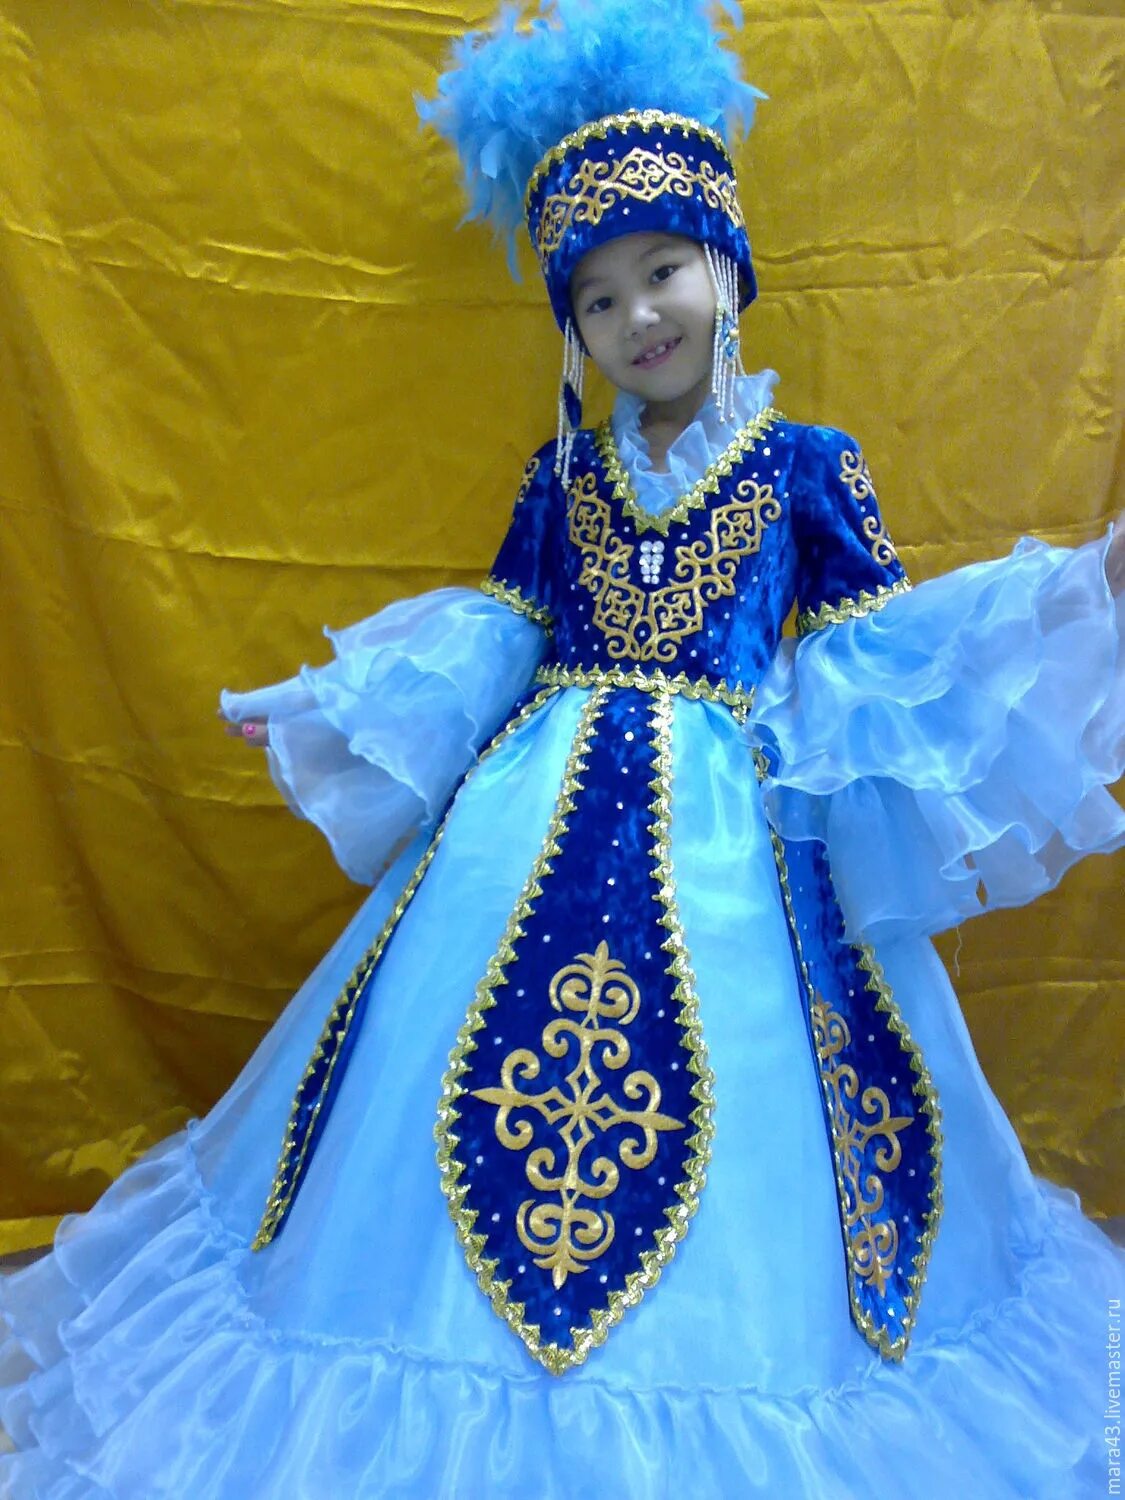 Казахский национальный костюм. Казахский национальный костюм для девочки. Казахское национальное платье. Казахское национальное платье для девочек. Казахские костюм детский